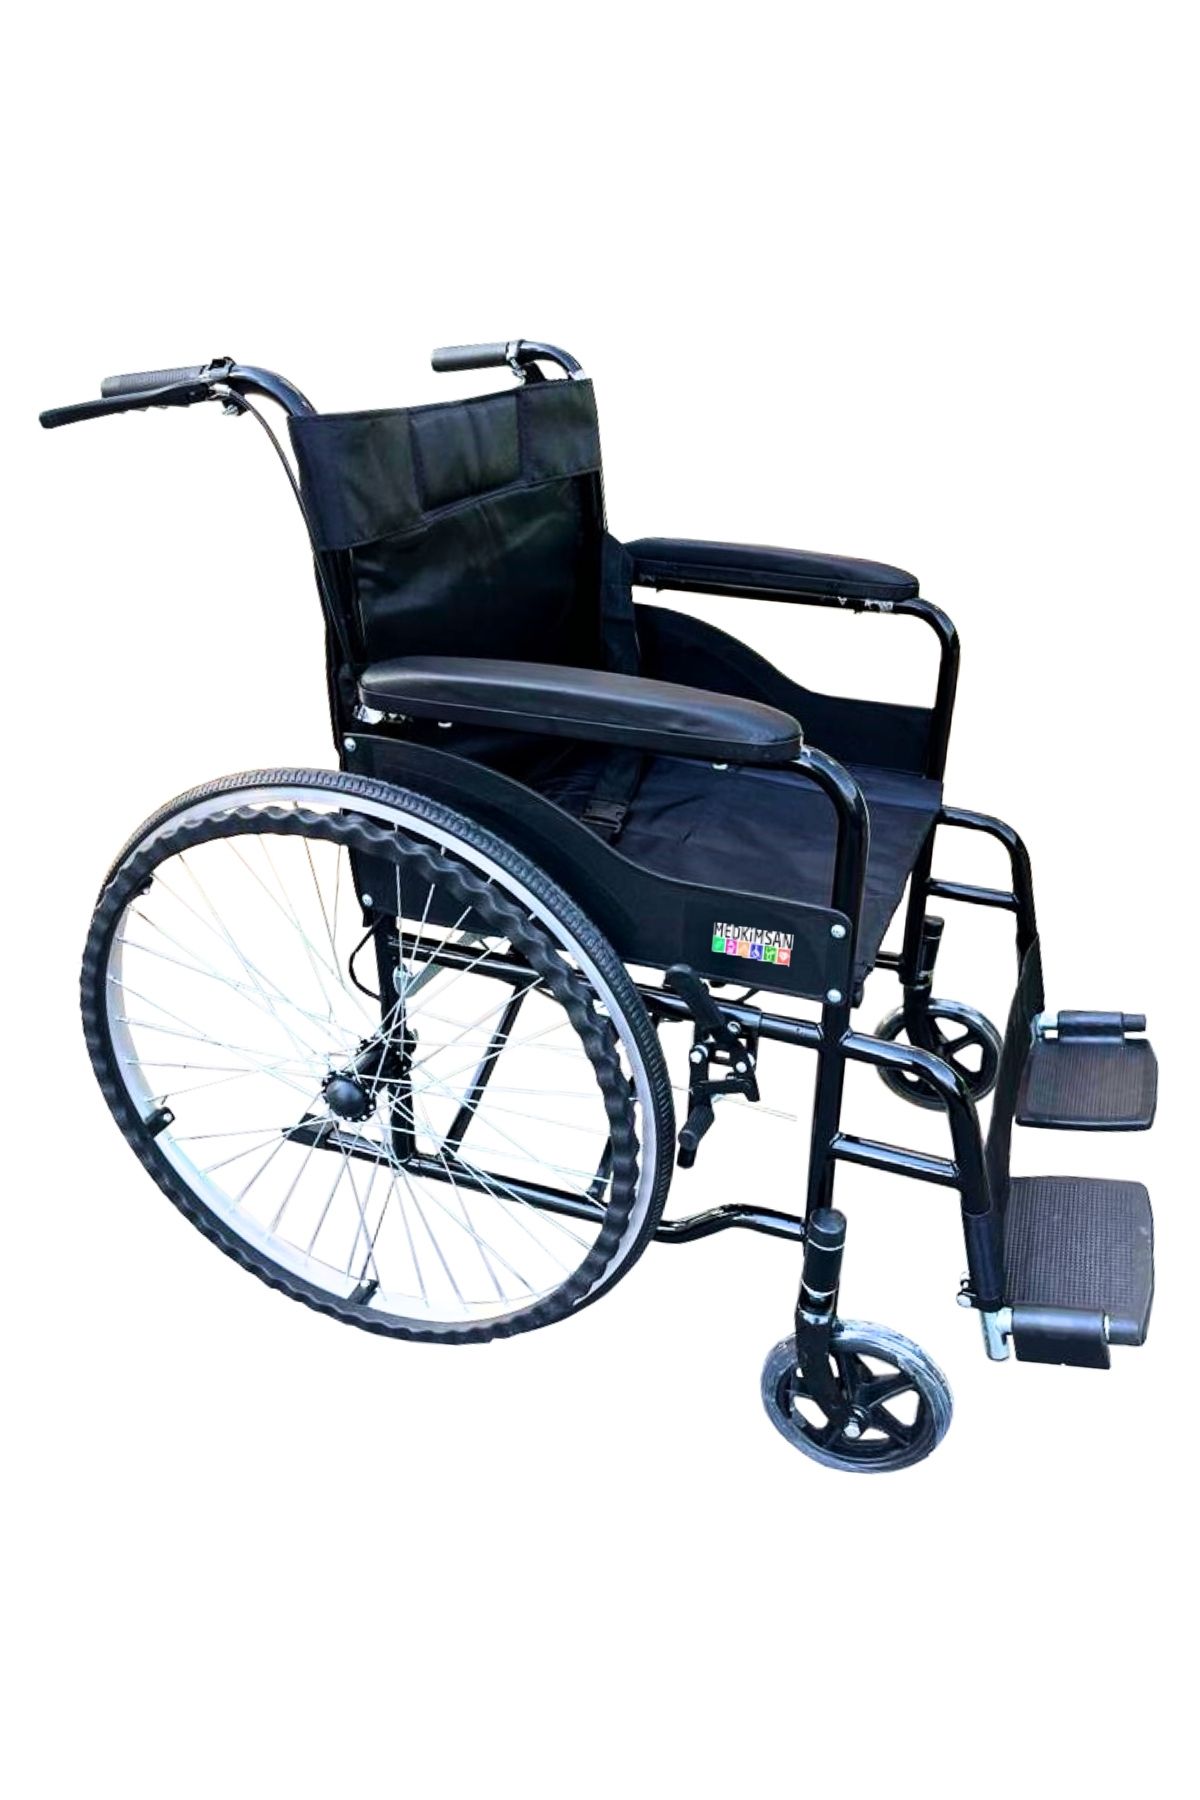 Medkimsan Frenli Tekerlekli Sandalye | Hasta Transfer Sandalyesi | 1.sınıf | Siyah Renk